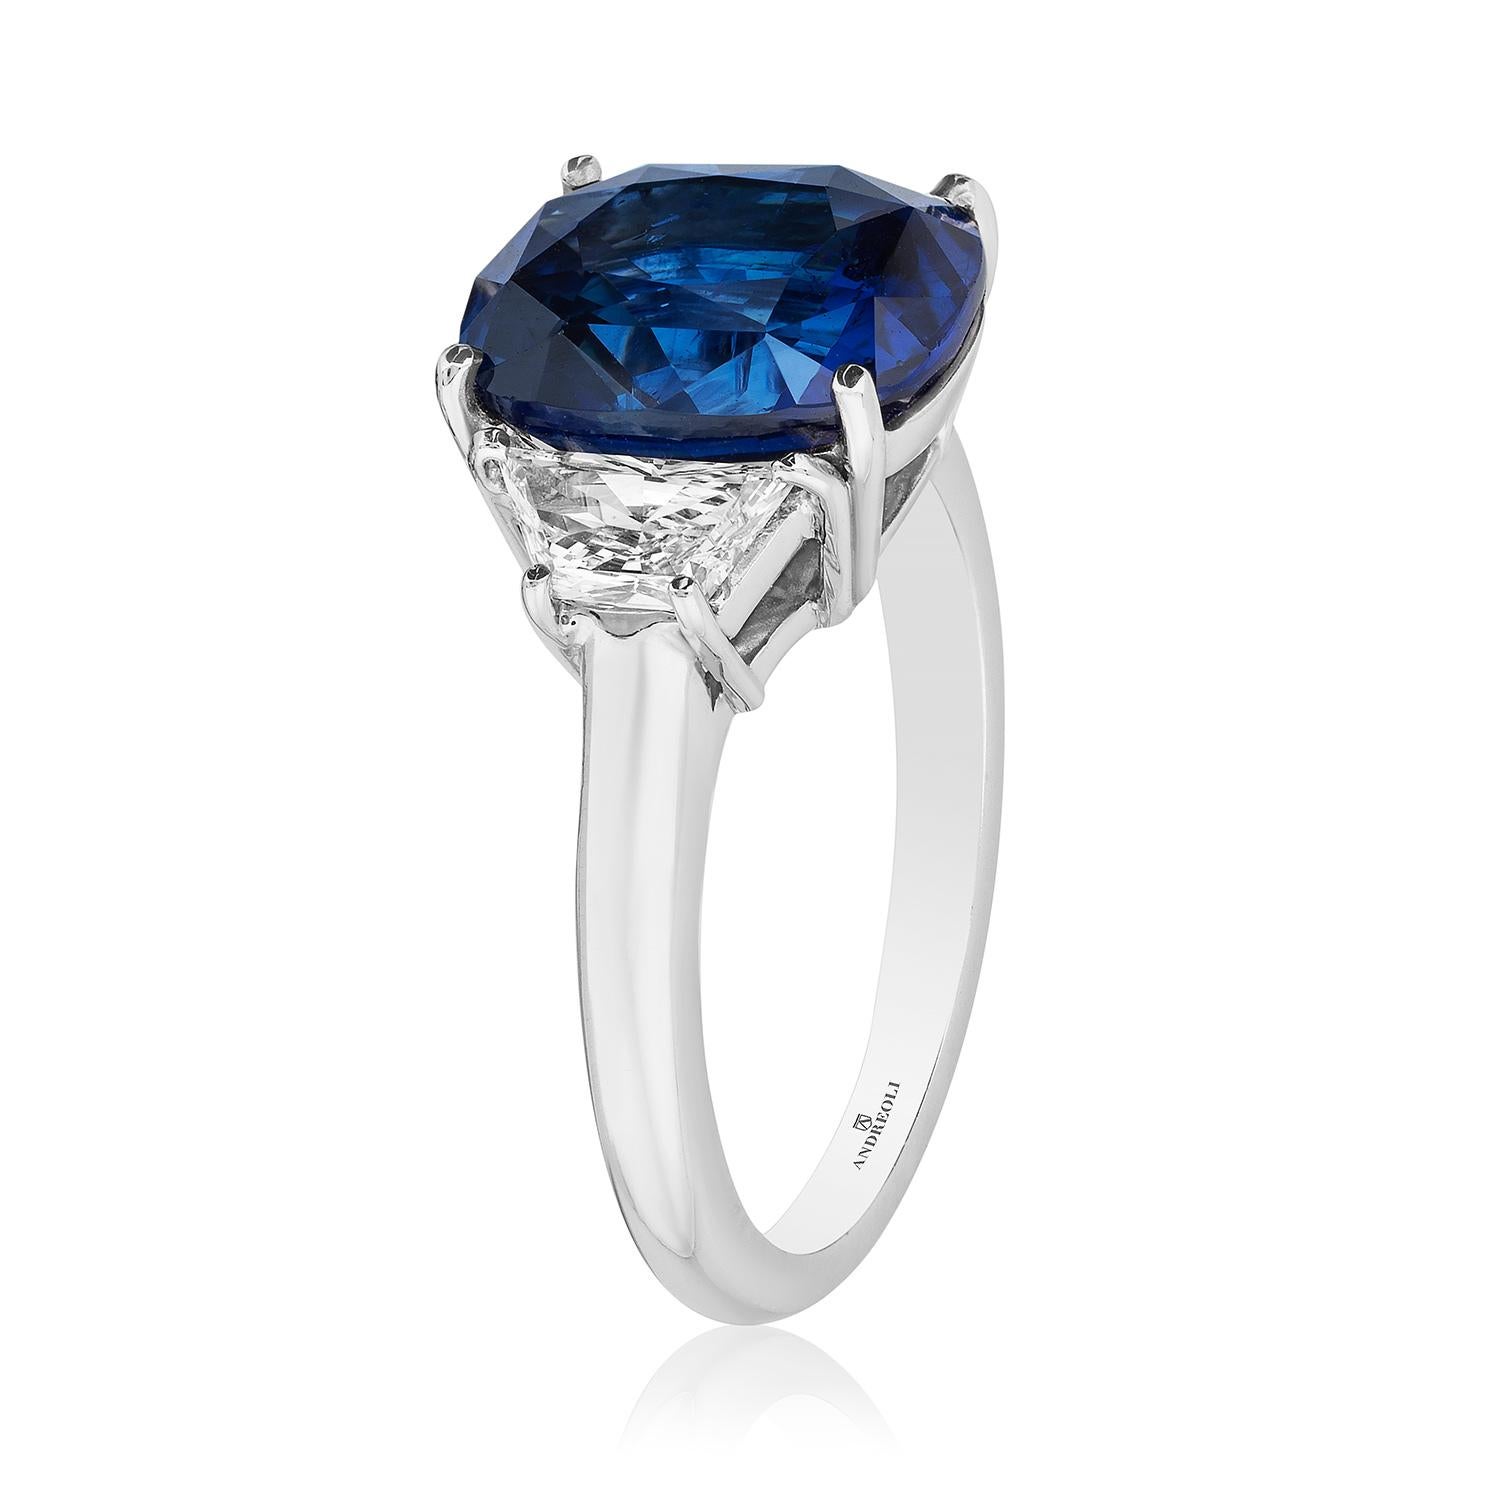 Blauer Saphir Sri Lanka Ceylon Drei Stein Verlobungsring Andreoli Zertifiziert

Dieser Ring aus blauem Saphir von Andreoli ist vom renommierten Labor GRS Switzerland zertifiziert. 

Mit einem blauen Sri-Lanka-Ceylon-Saphir von 5,64 Karat, flankiert